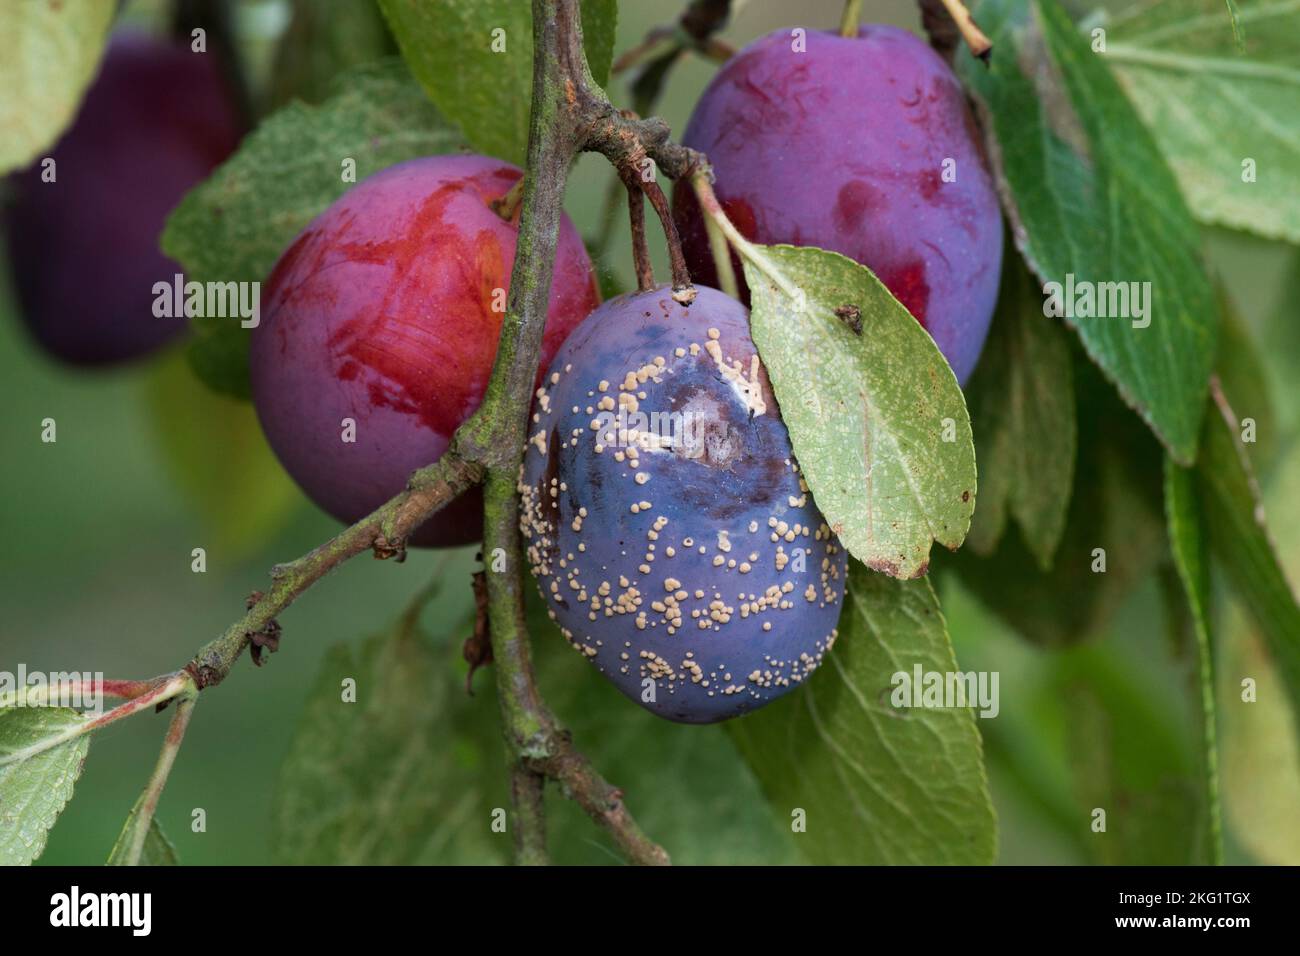 Sustules de pourriture brune (Monilinia laxa) se formant sur le fruit de prune Victoria pourpre mûr endommagé secondaire sur l'arbre, Berkshire, août Banque D'Images